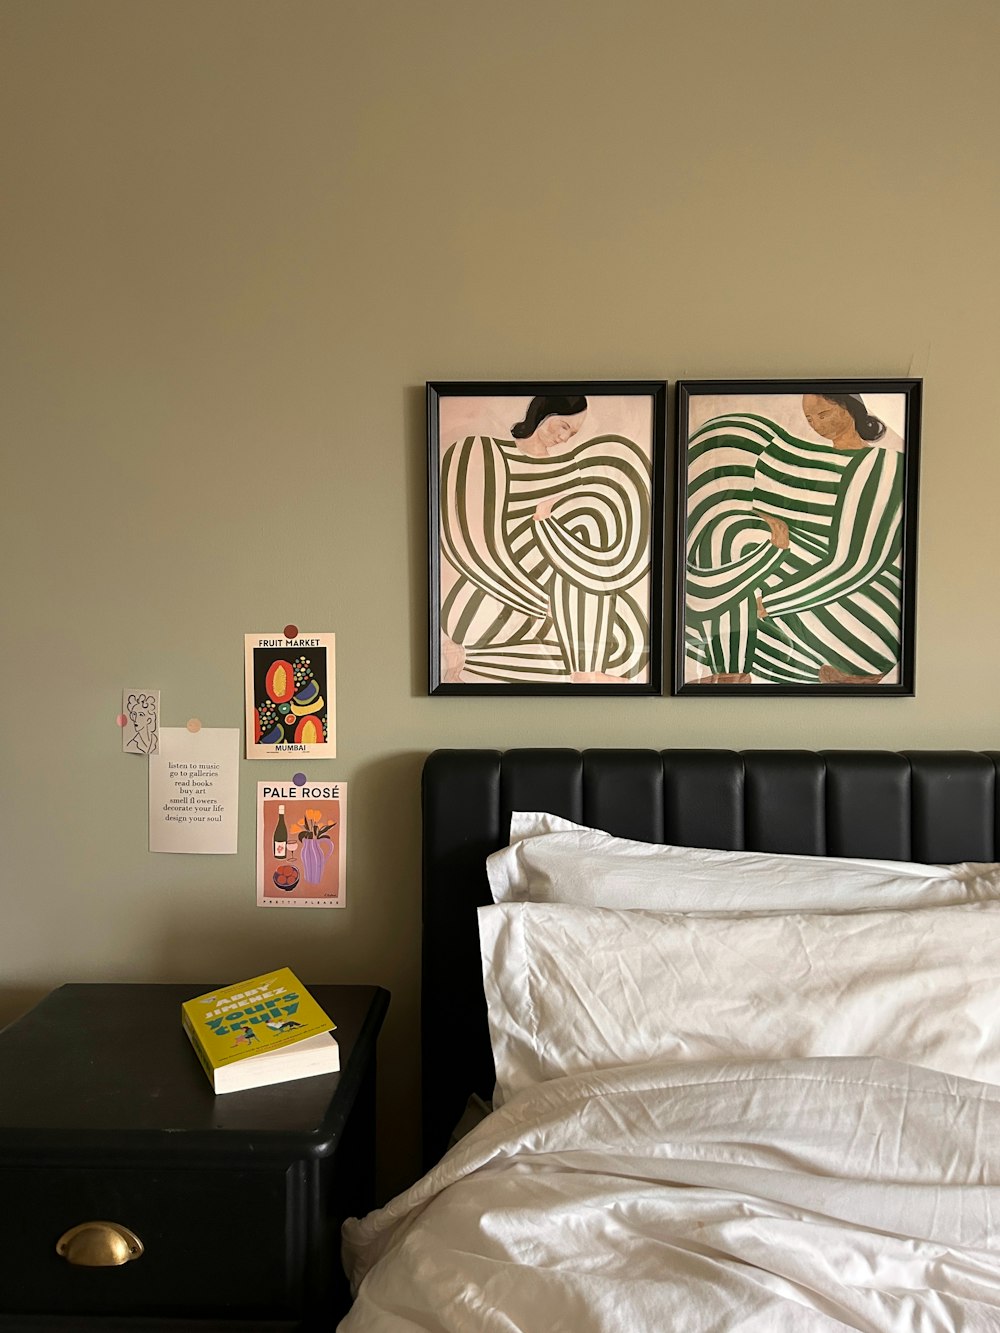 ein Bett mit einer weißen Bettdecke und zwei Bildern an der Wand